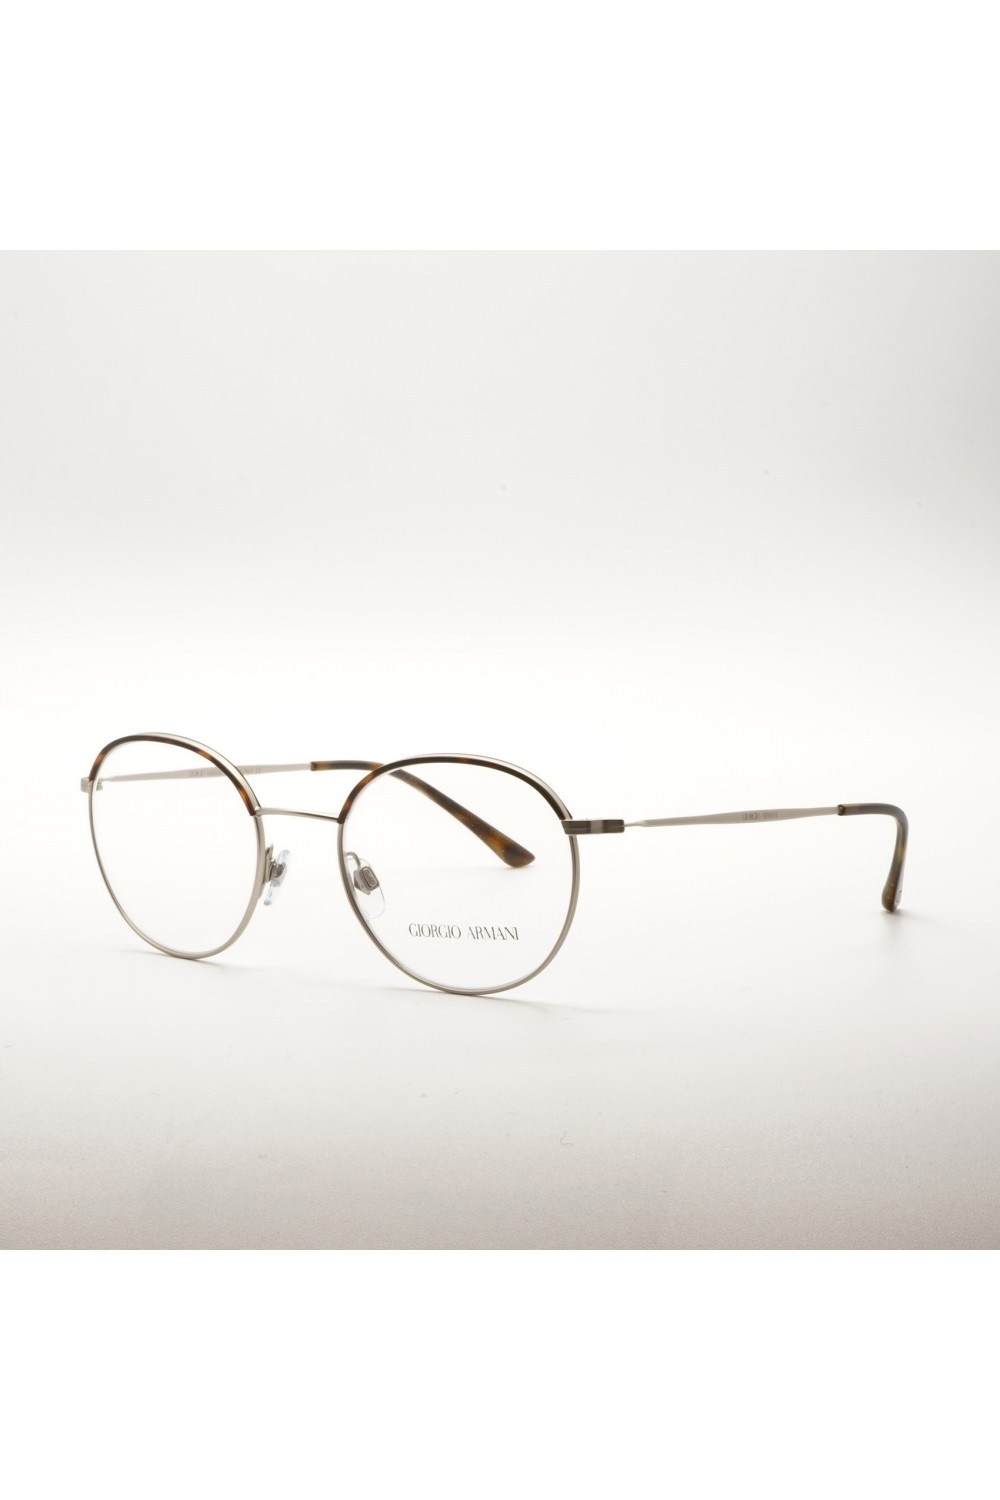 Giorgio Armani - Occhiali da vista in metallo tondi unisex silver - AR5070-J